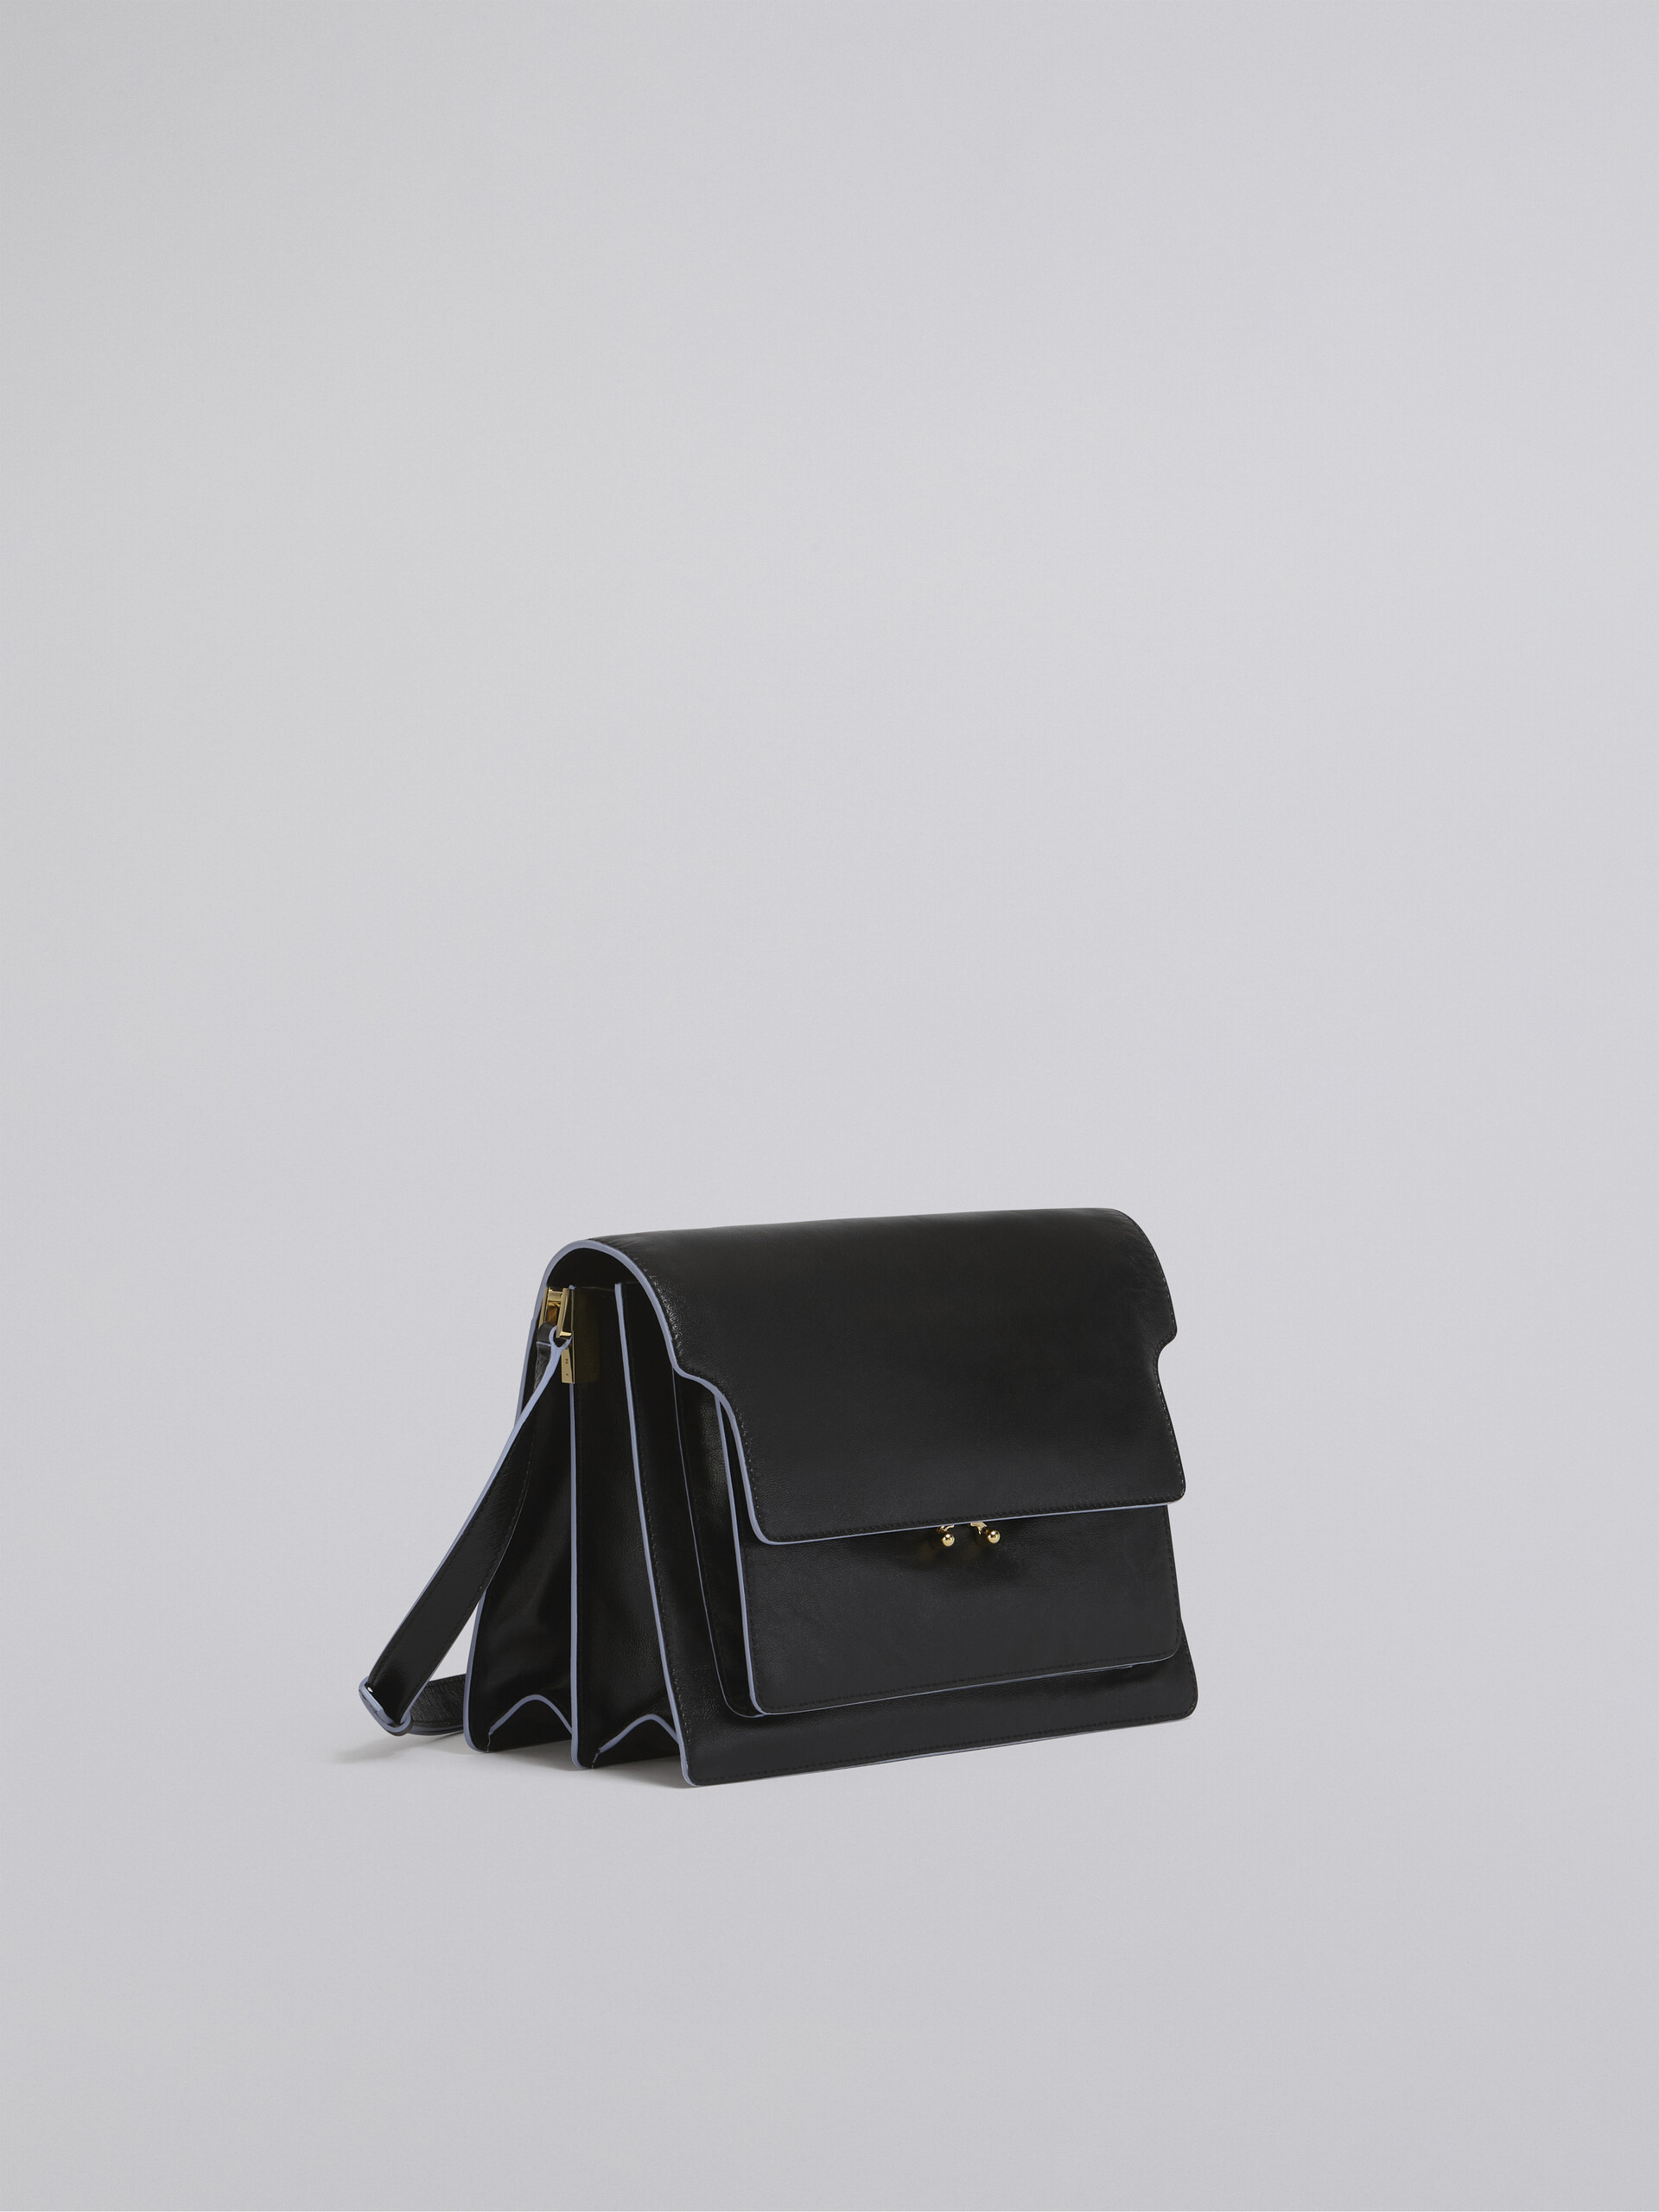 TRUNK SOFT large bag in black leather - Shoulder Bag - Image 5